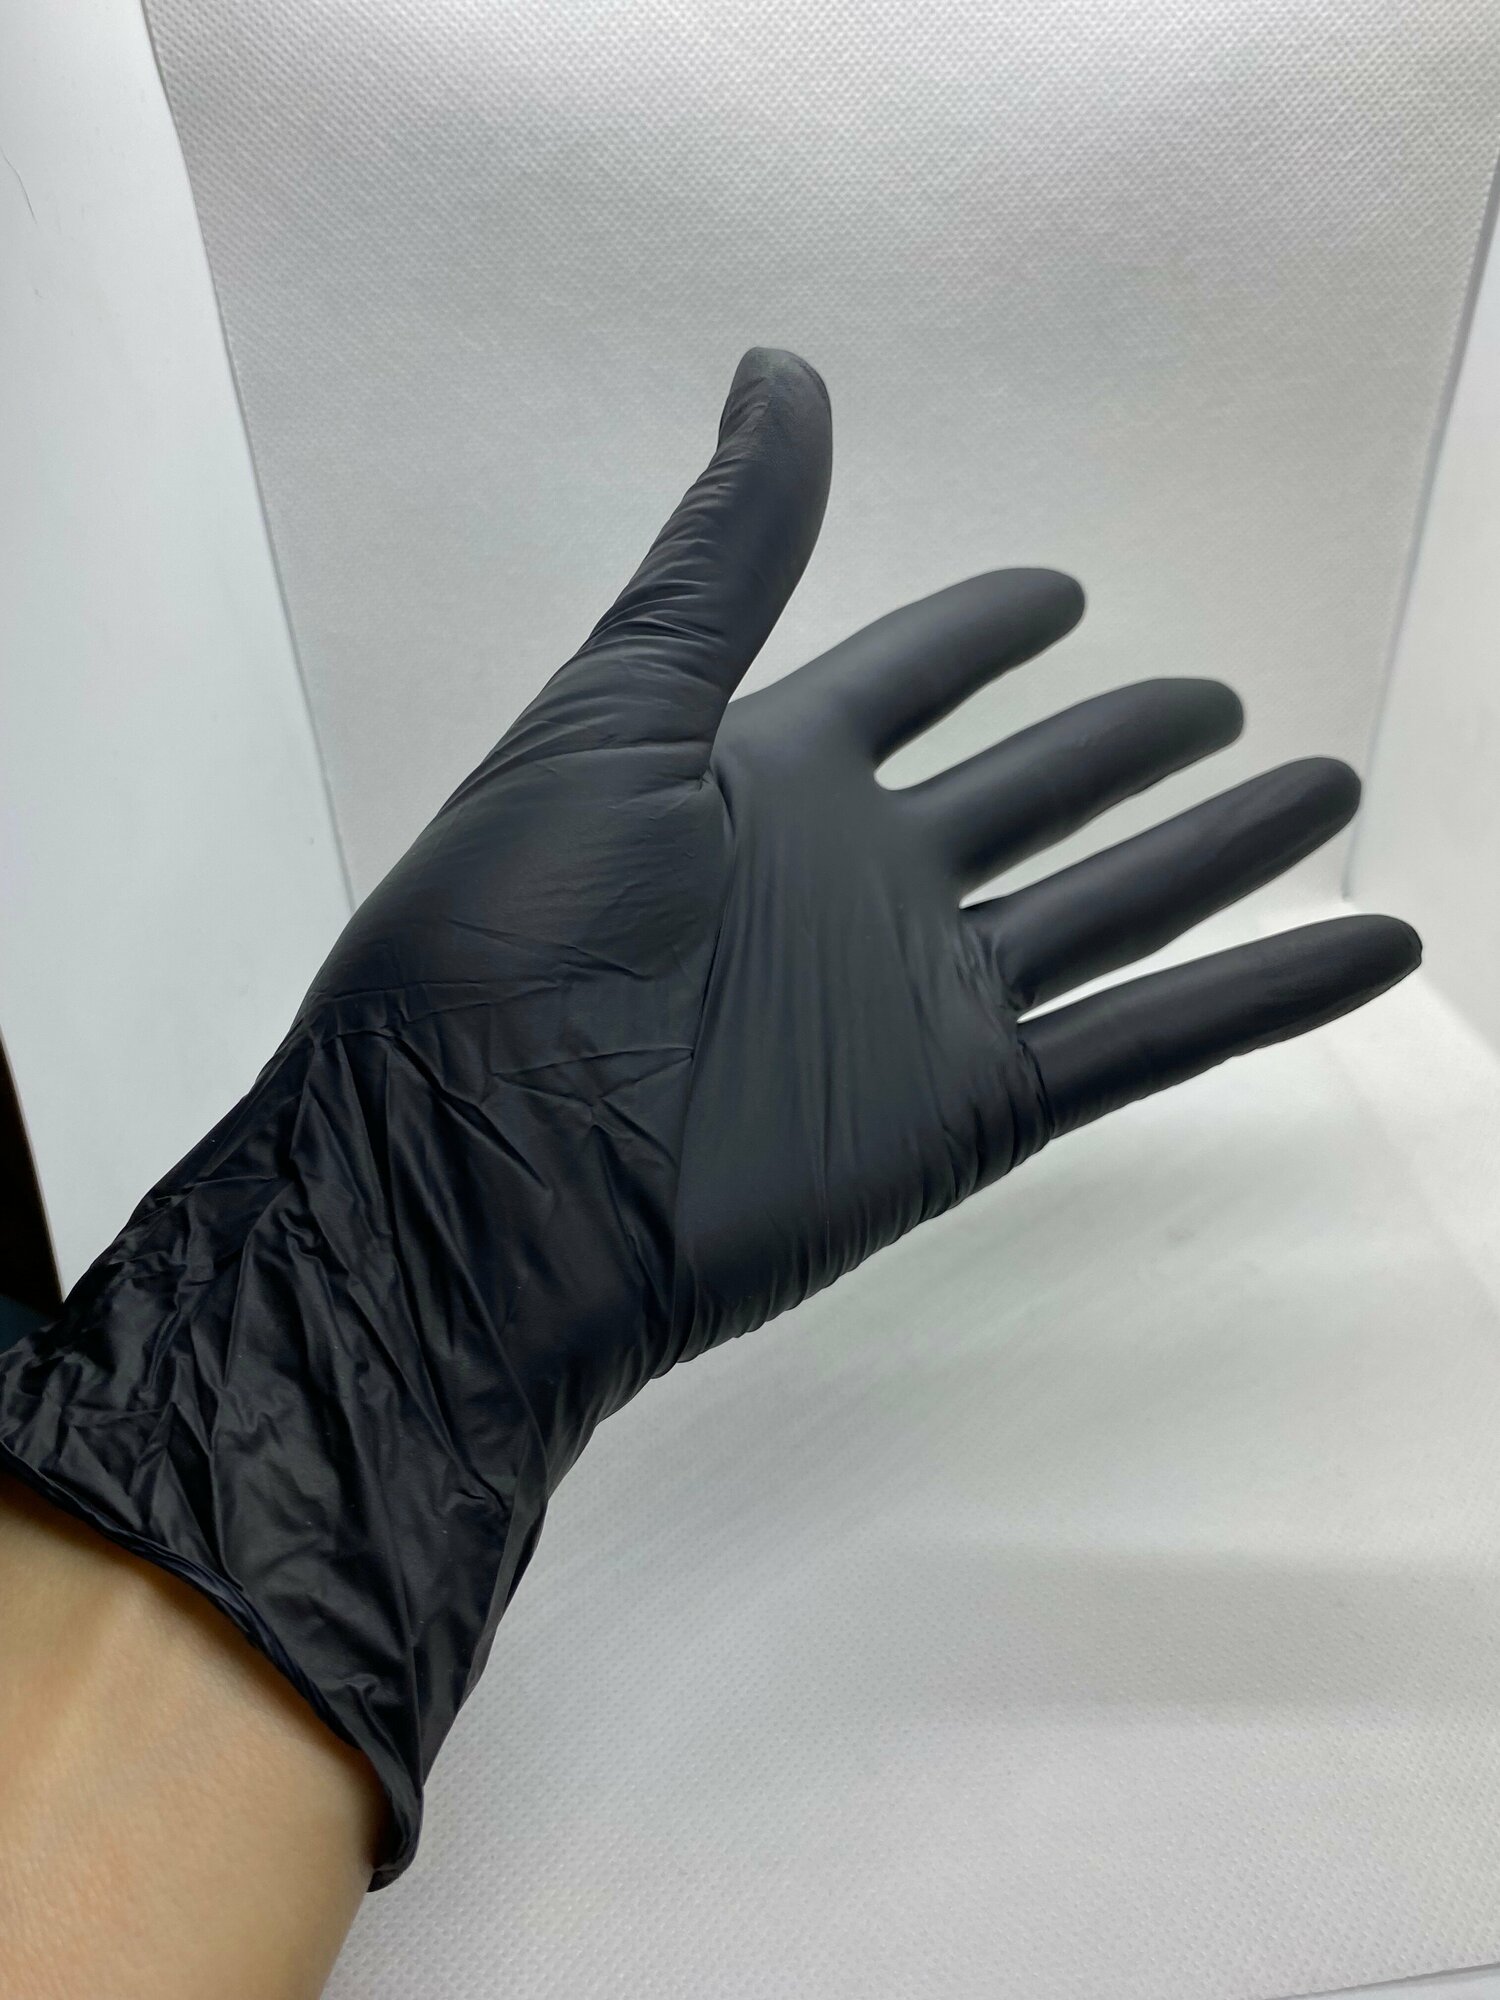 Перчатки Медицинские Нитриловые Benovy (Бинови), черные, размер S, 100 штук/50 пар, Неопудренные, Гипоаллергенные